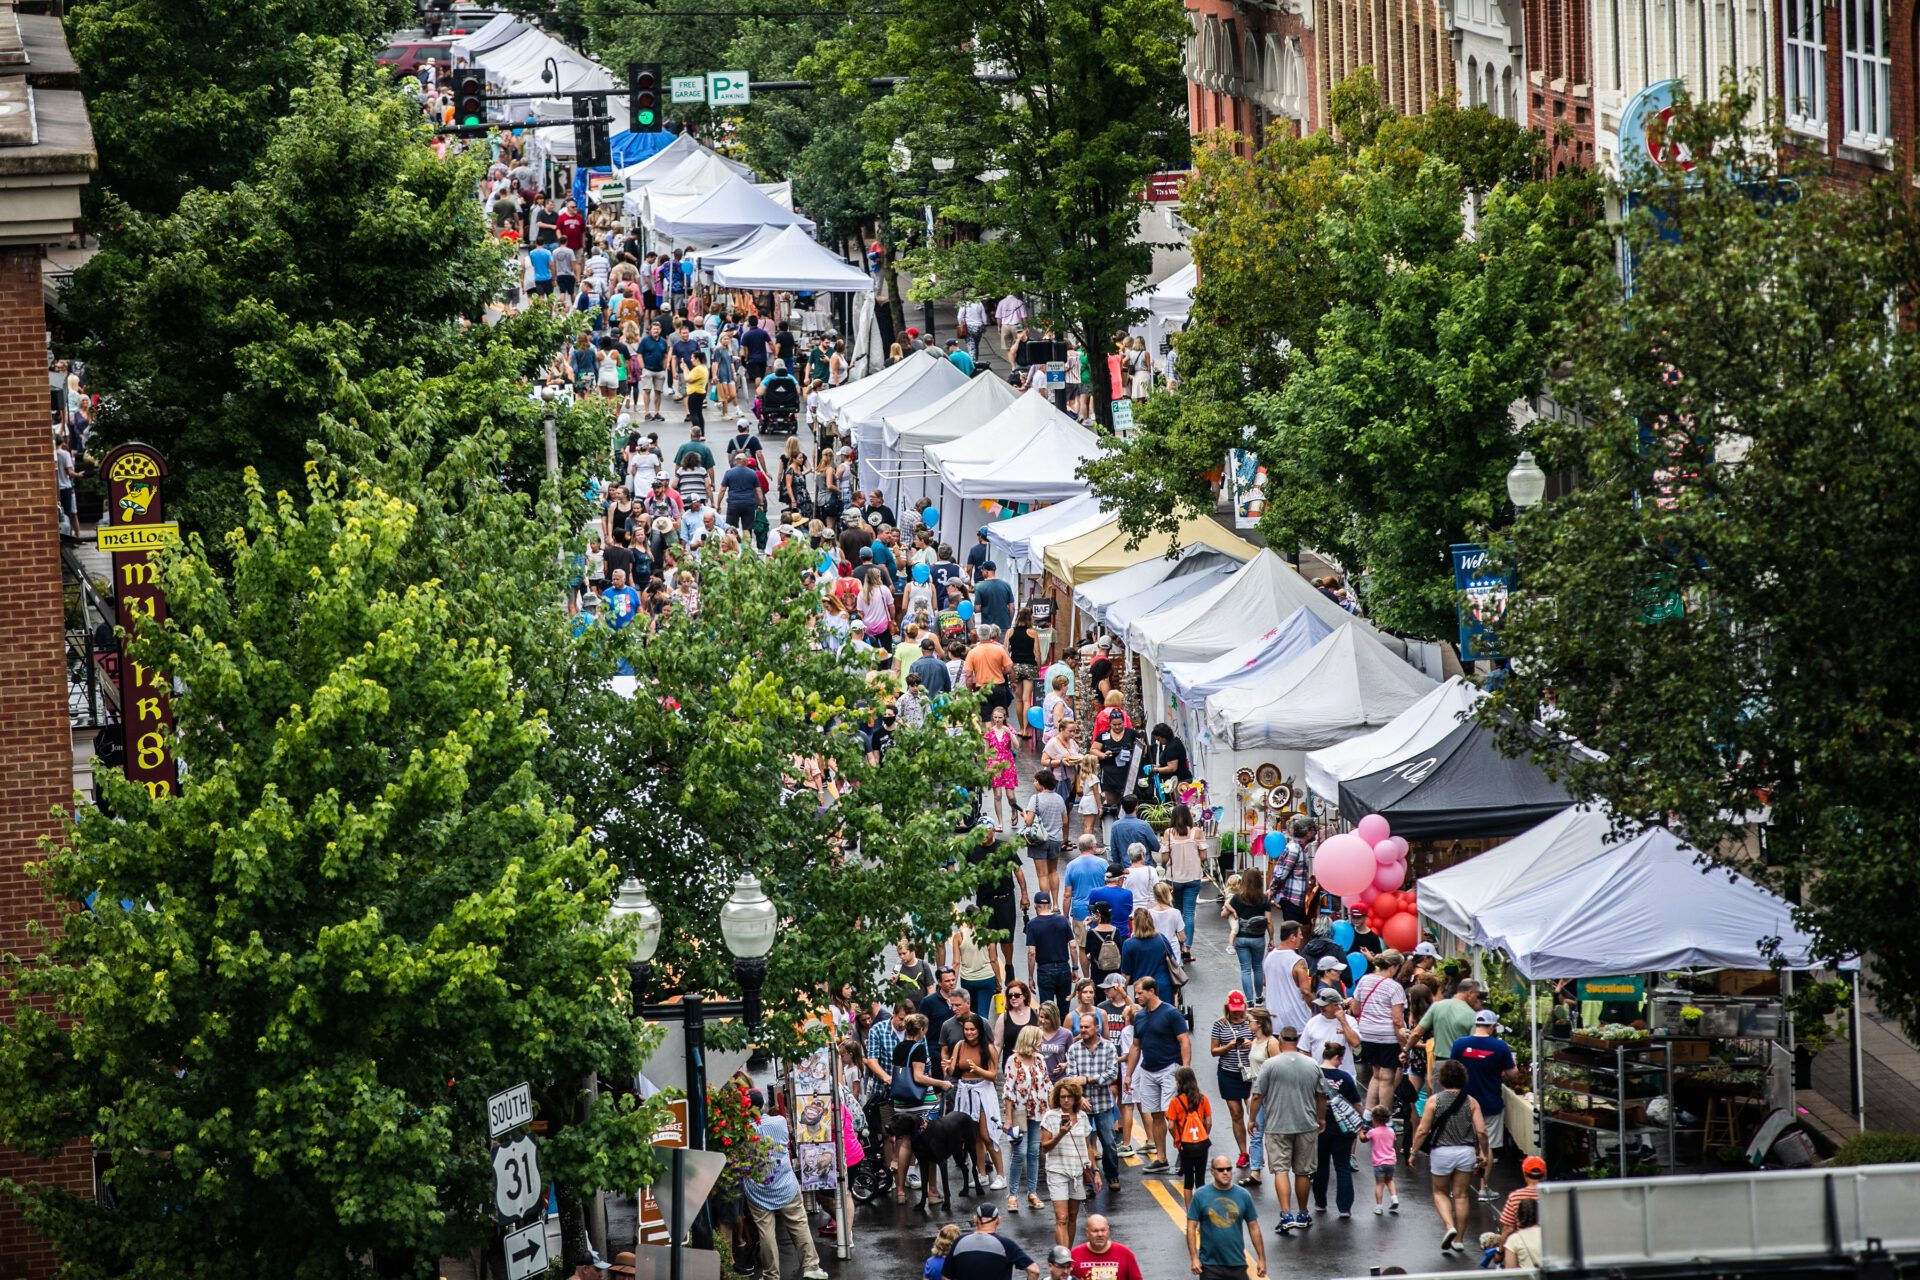 2023 Main Street Festival in downtown Franklin, TN.